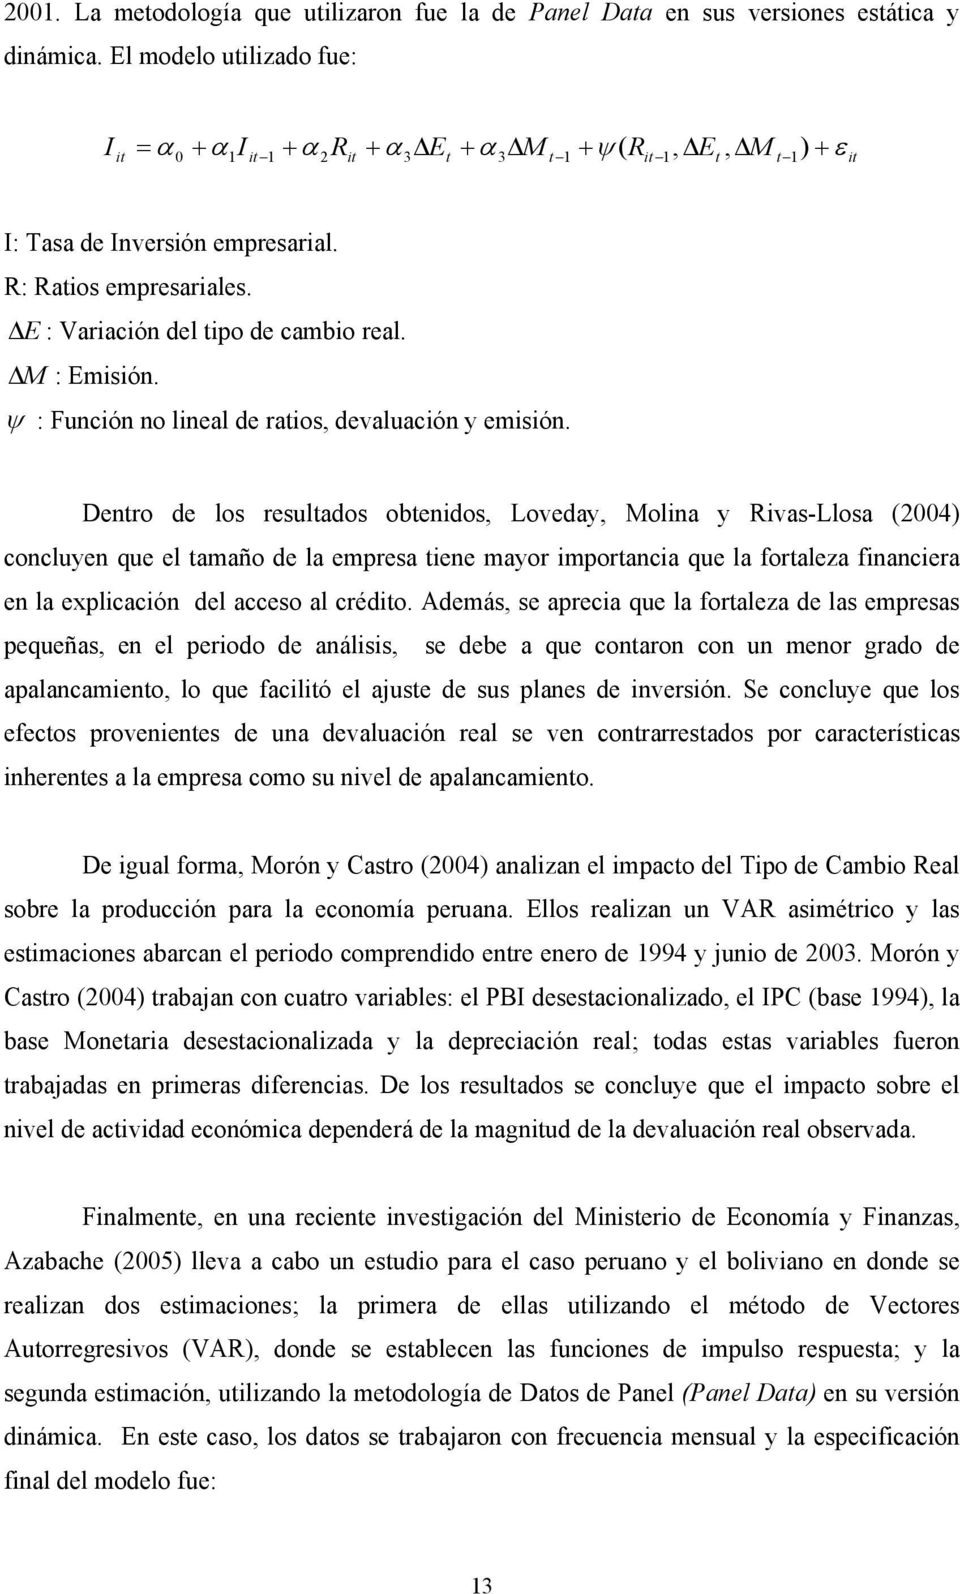 Dnro d los rsulados obnidos, Lovday, Molina y Rivas-Llosa (2004) concluyn qu l amaño d la mprsa in mayor imporancia qu la foralza financira n la xplicación dl accso al crédio.